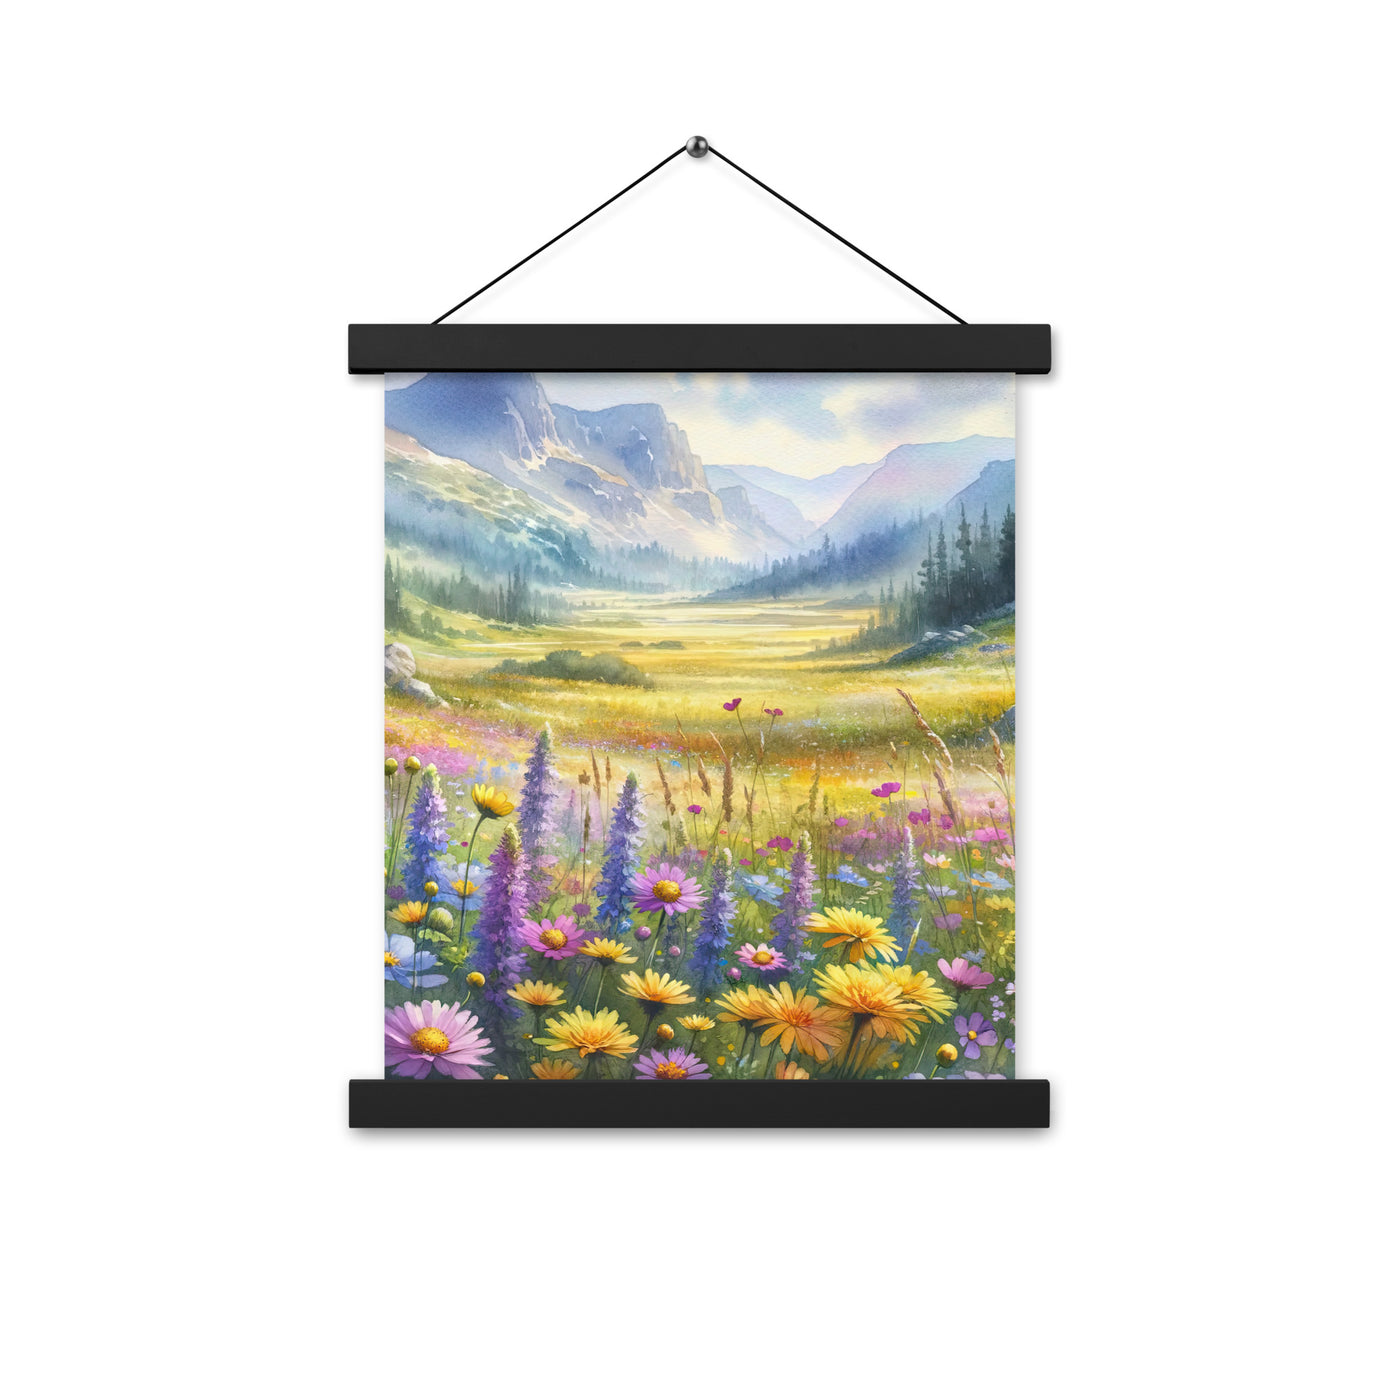 Aquarell einer Almwiese in Ruhe, Wildblumenteppich in Gelb, Lila, Rosa - Premium Poster mit Aufhängung berge xxx yyy zzz 27.9 x 35.6 cm